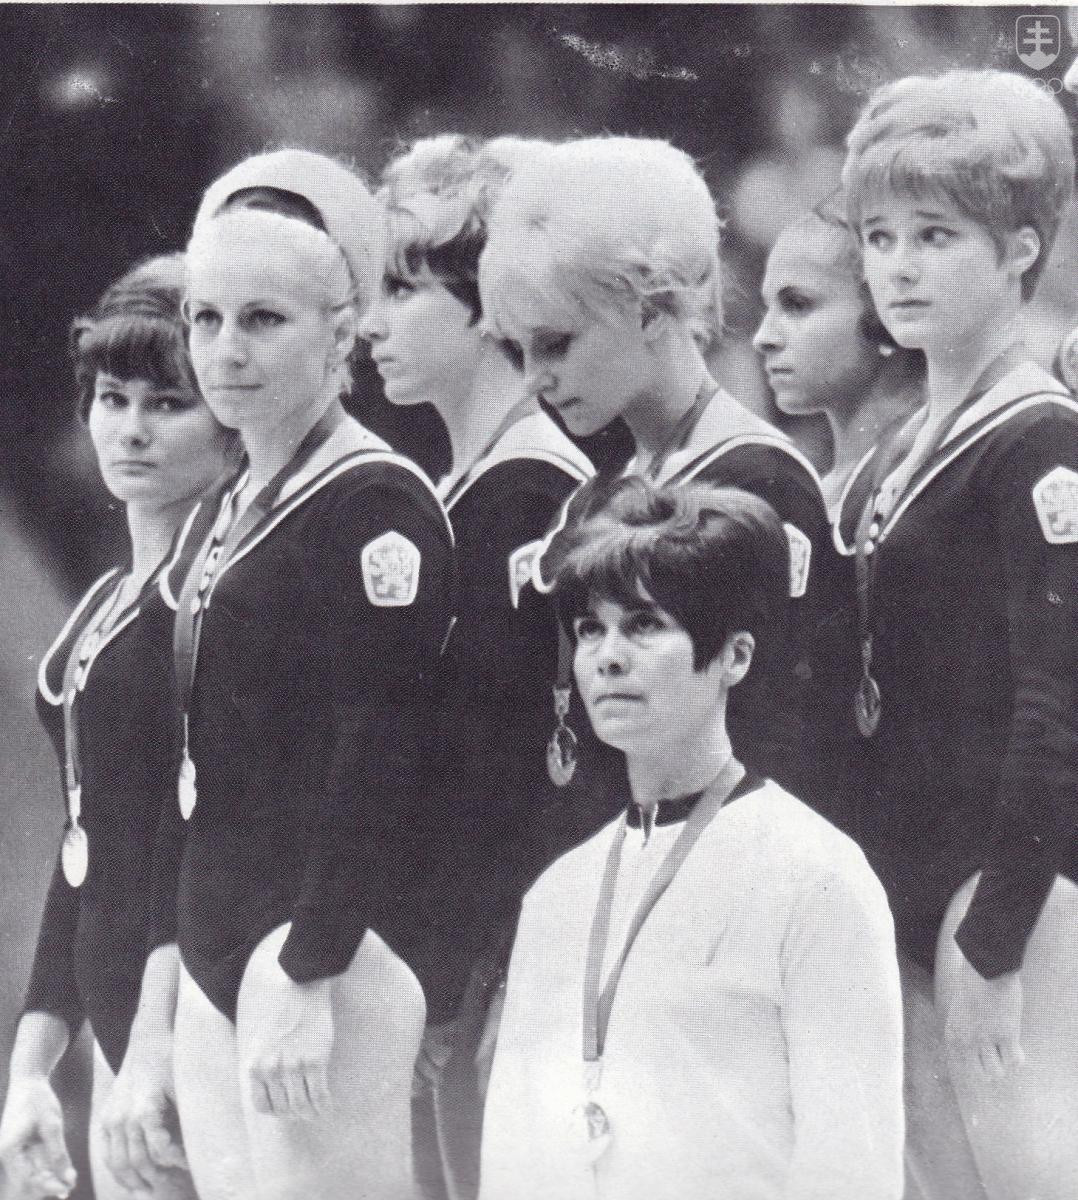 So striebornou olympijskou medailou zo súťaže družstiev na OH 1968 Marika (celkom vľavo) hneď vedľa fenomálnej Věry Čáslavskej. FOTO: ARCHÍV SOŠV